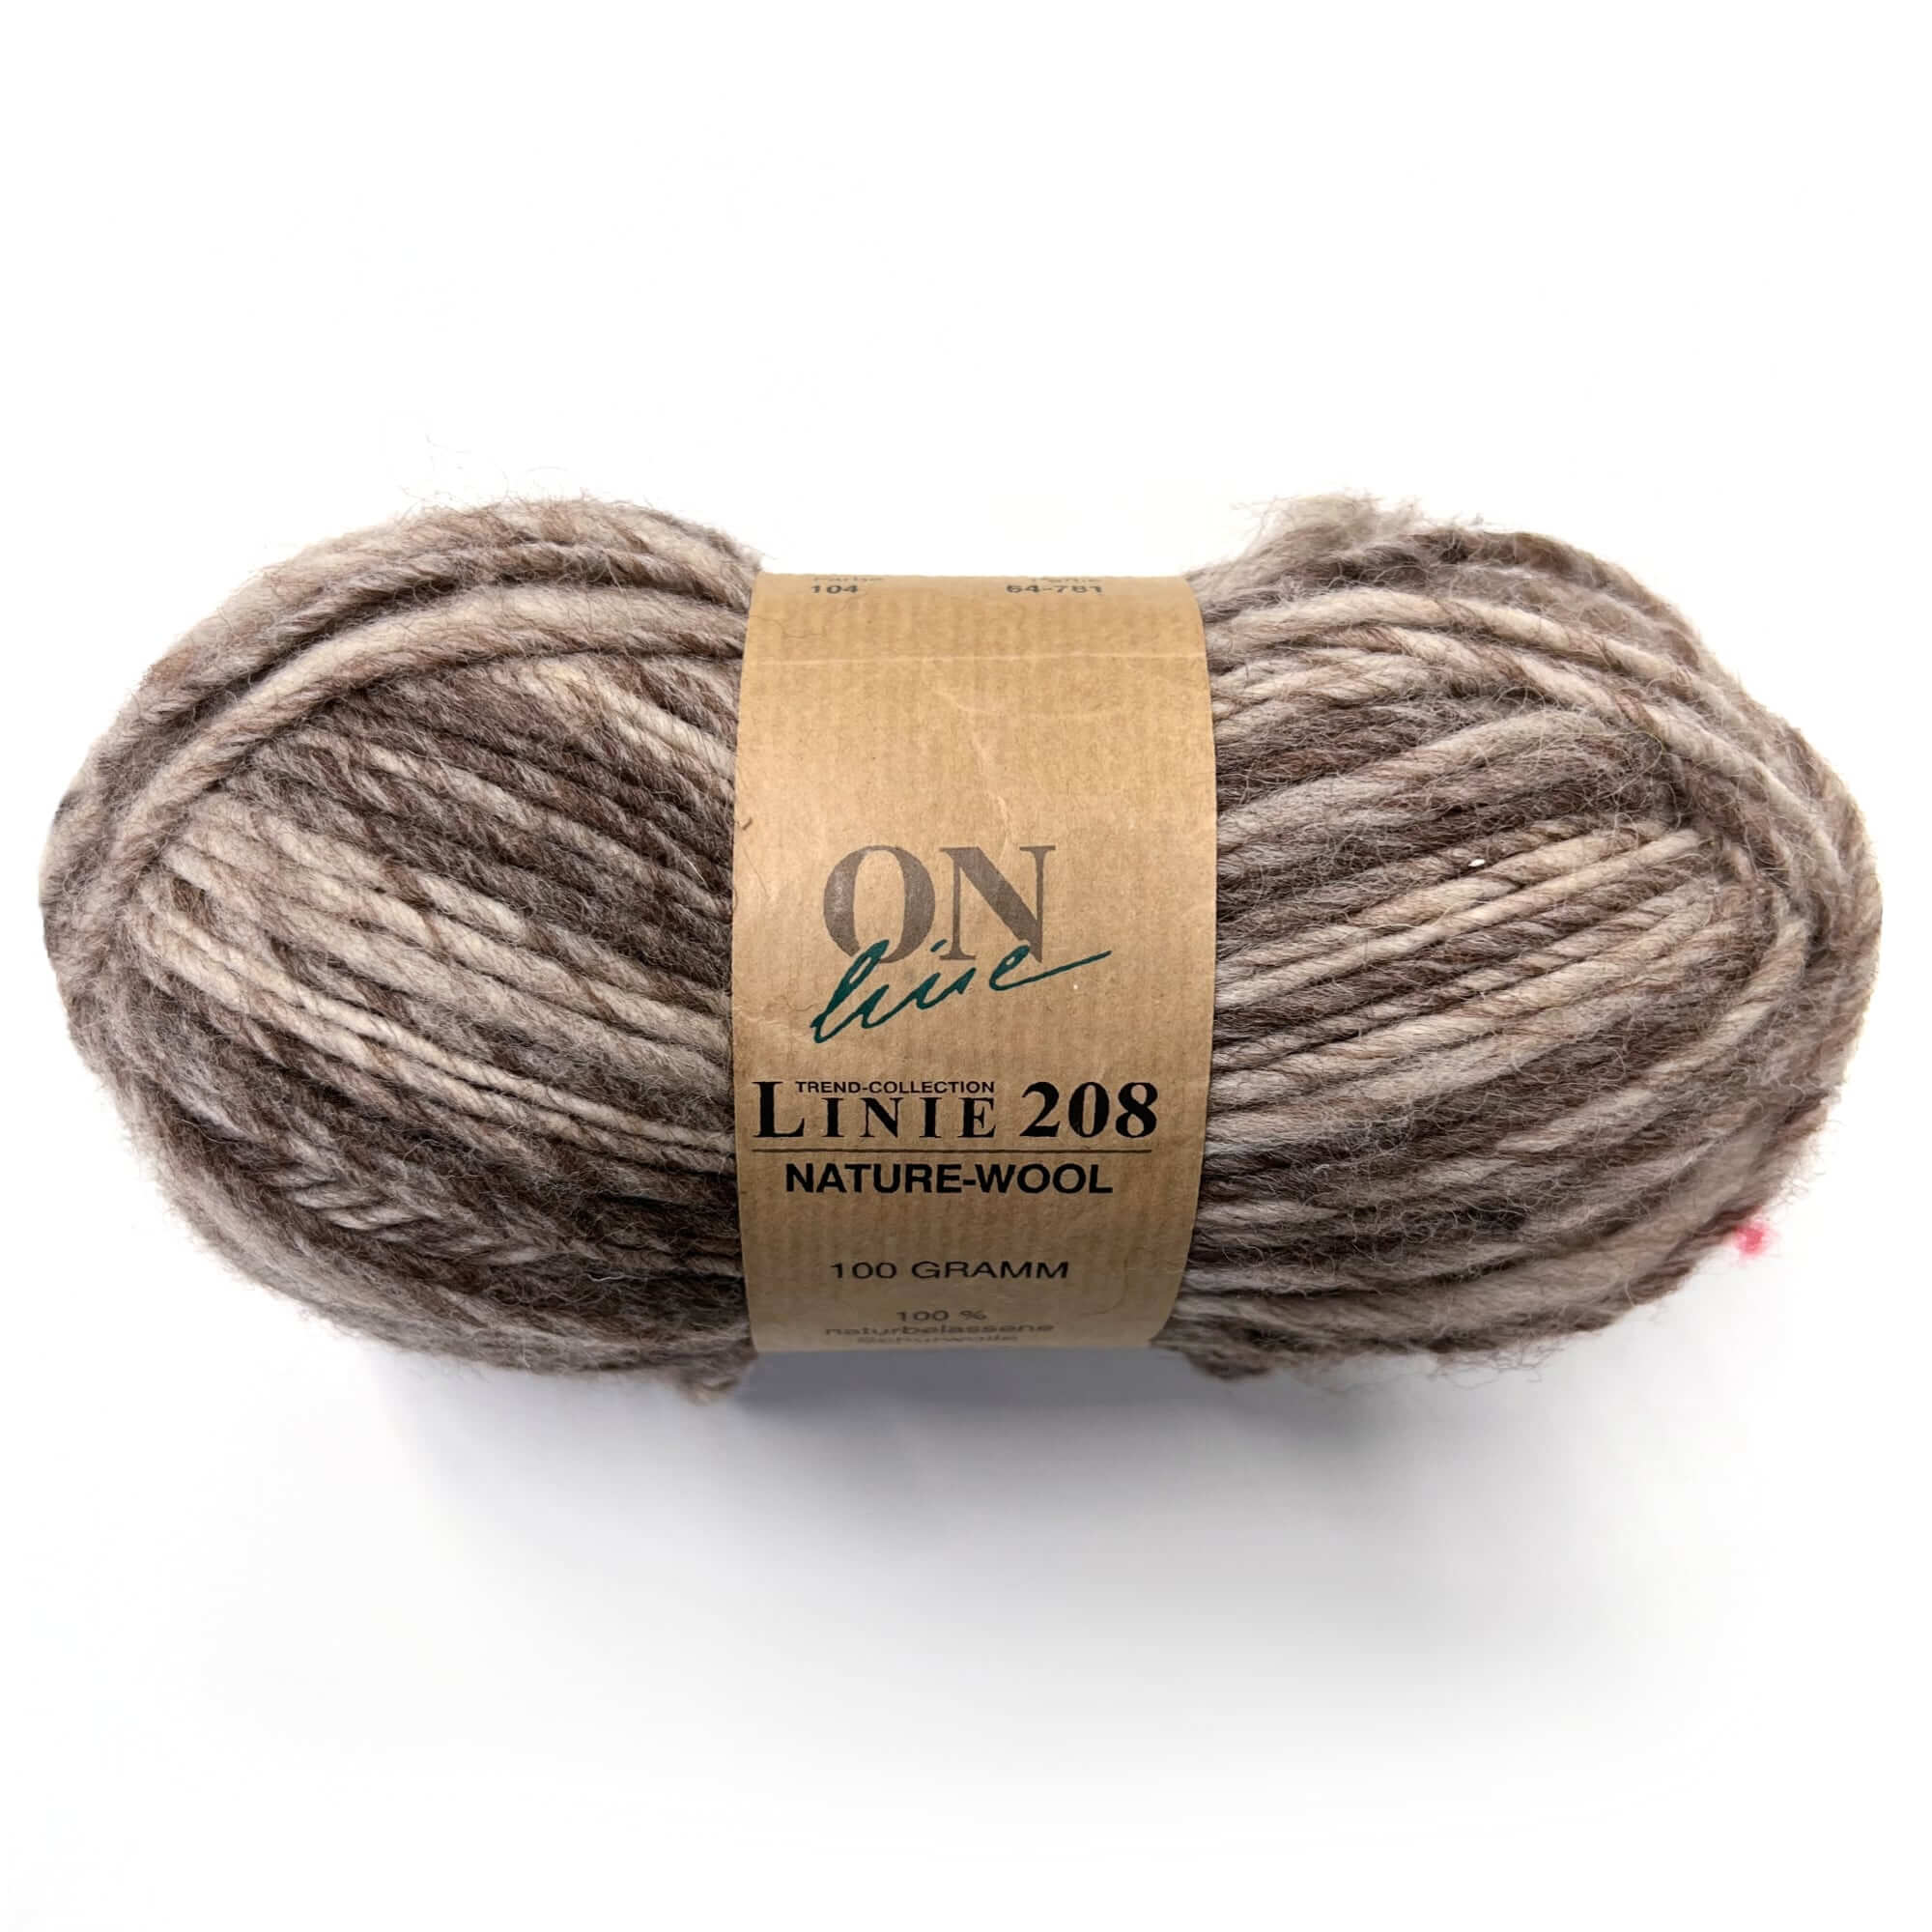 Wool Yarn, OnLine Yarns, Linie 208 Nature-Wool, Felting Wool Nature-Wool Linie 208 Yarn Designers Boutique